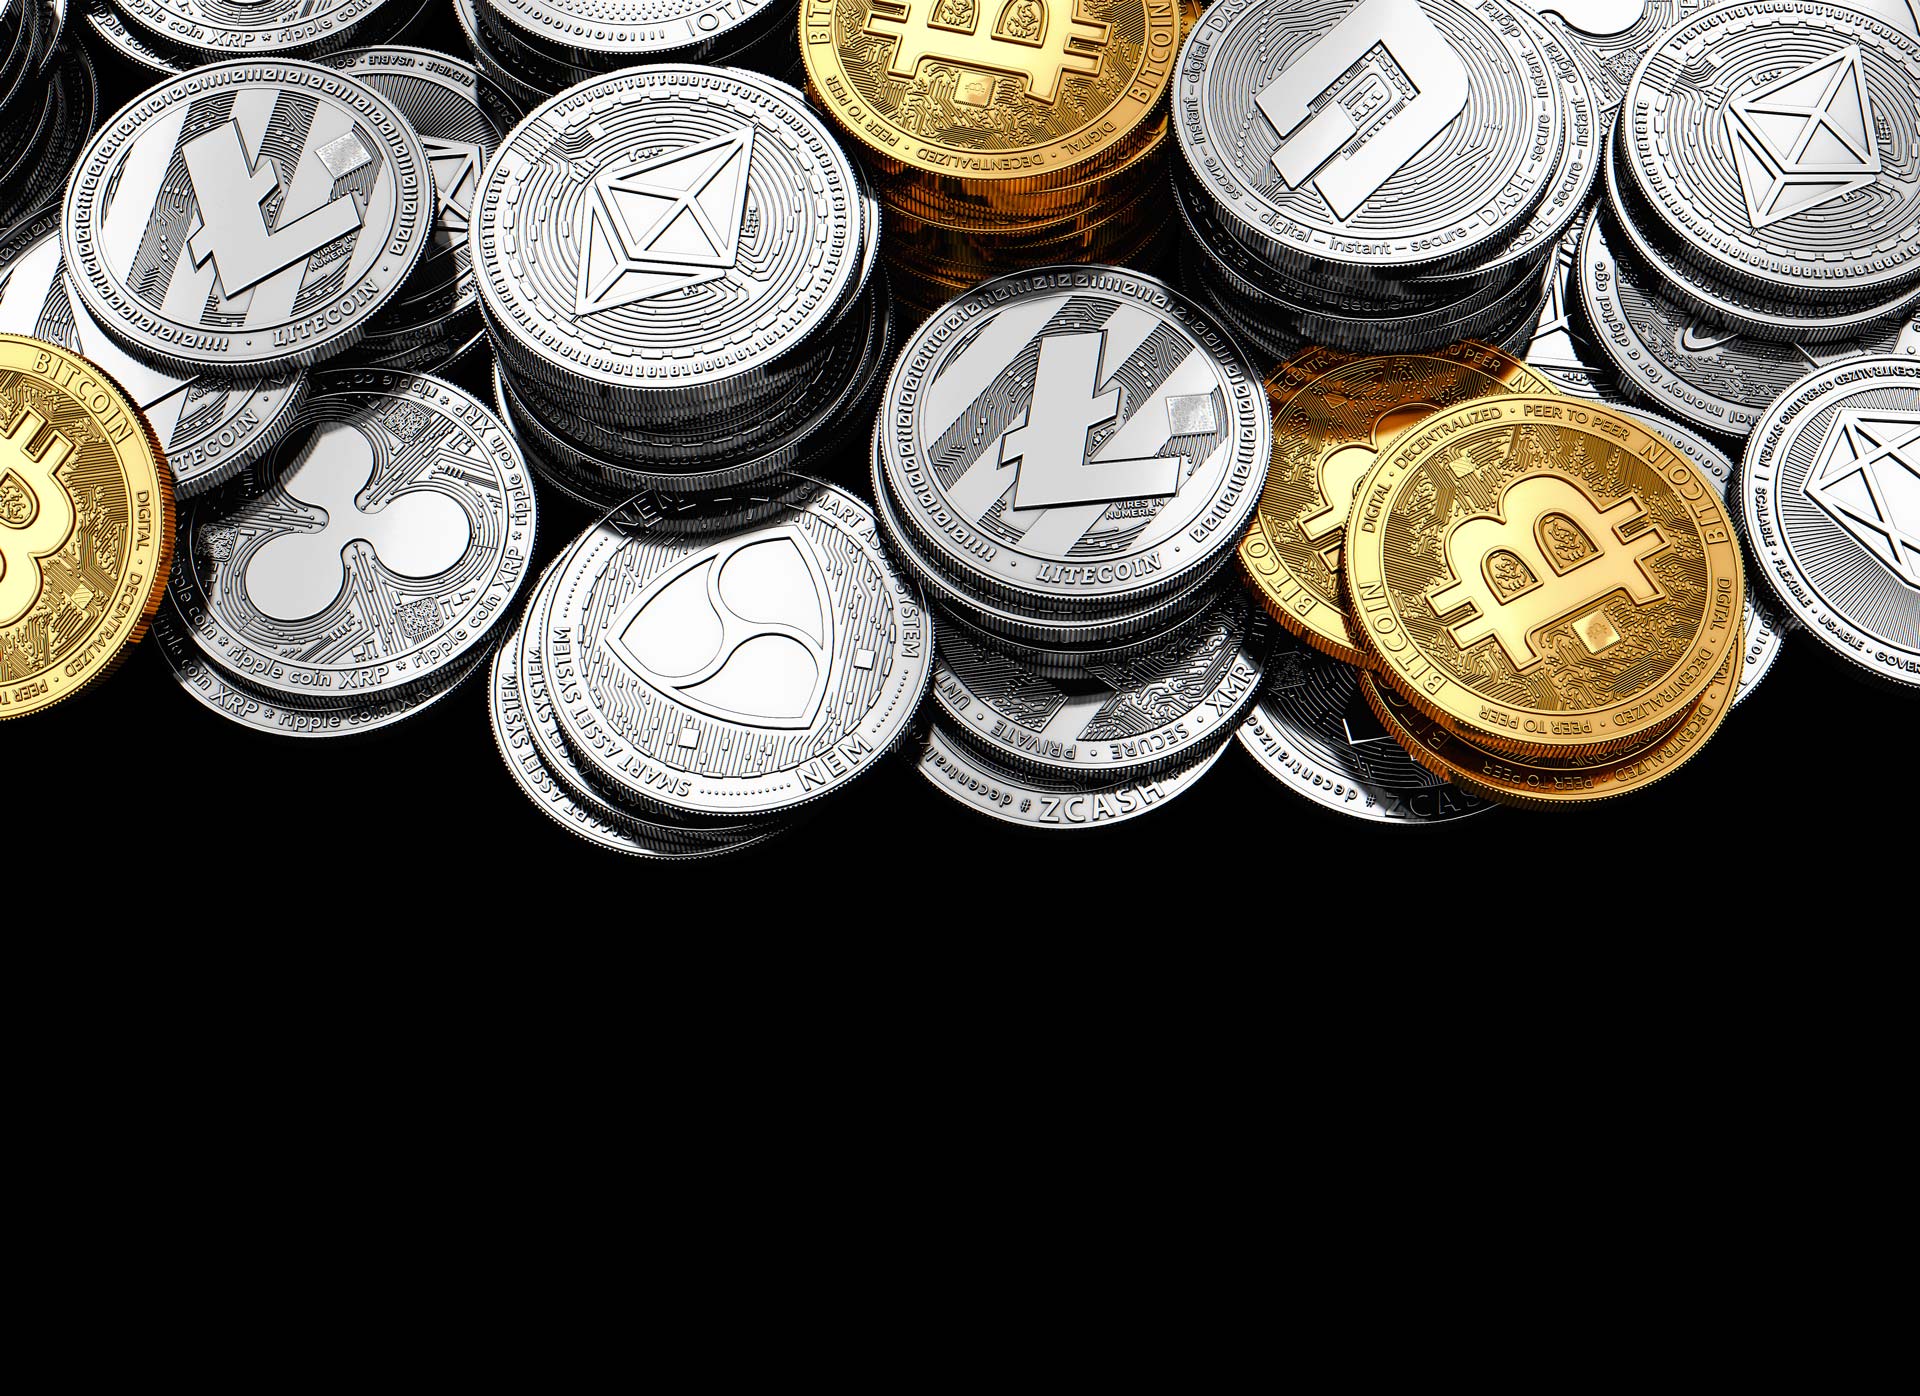 Is bitcoin cash replacing bitcoin прогноз стоимости биткоина на 2022